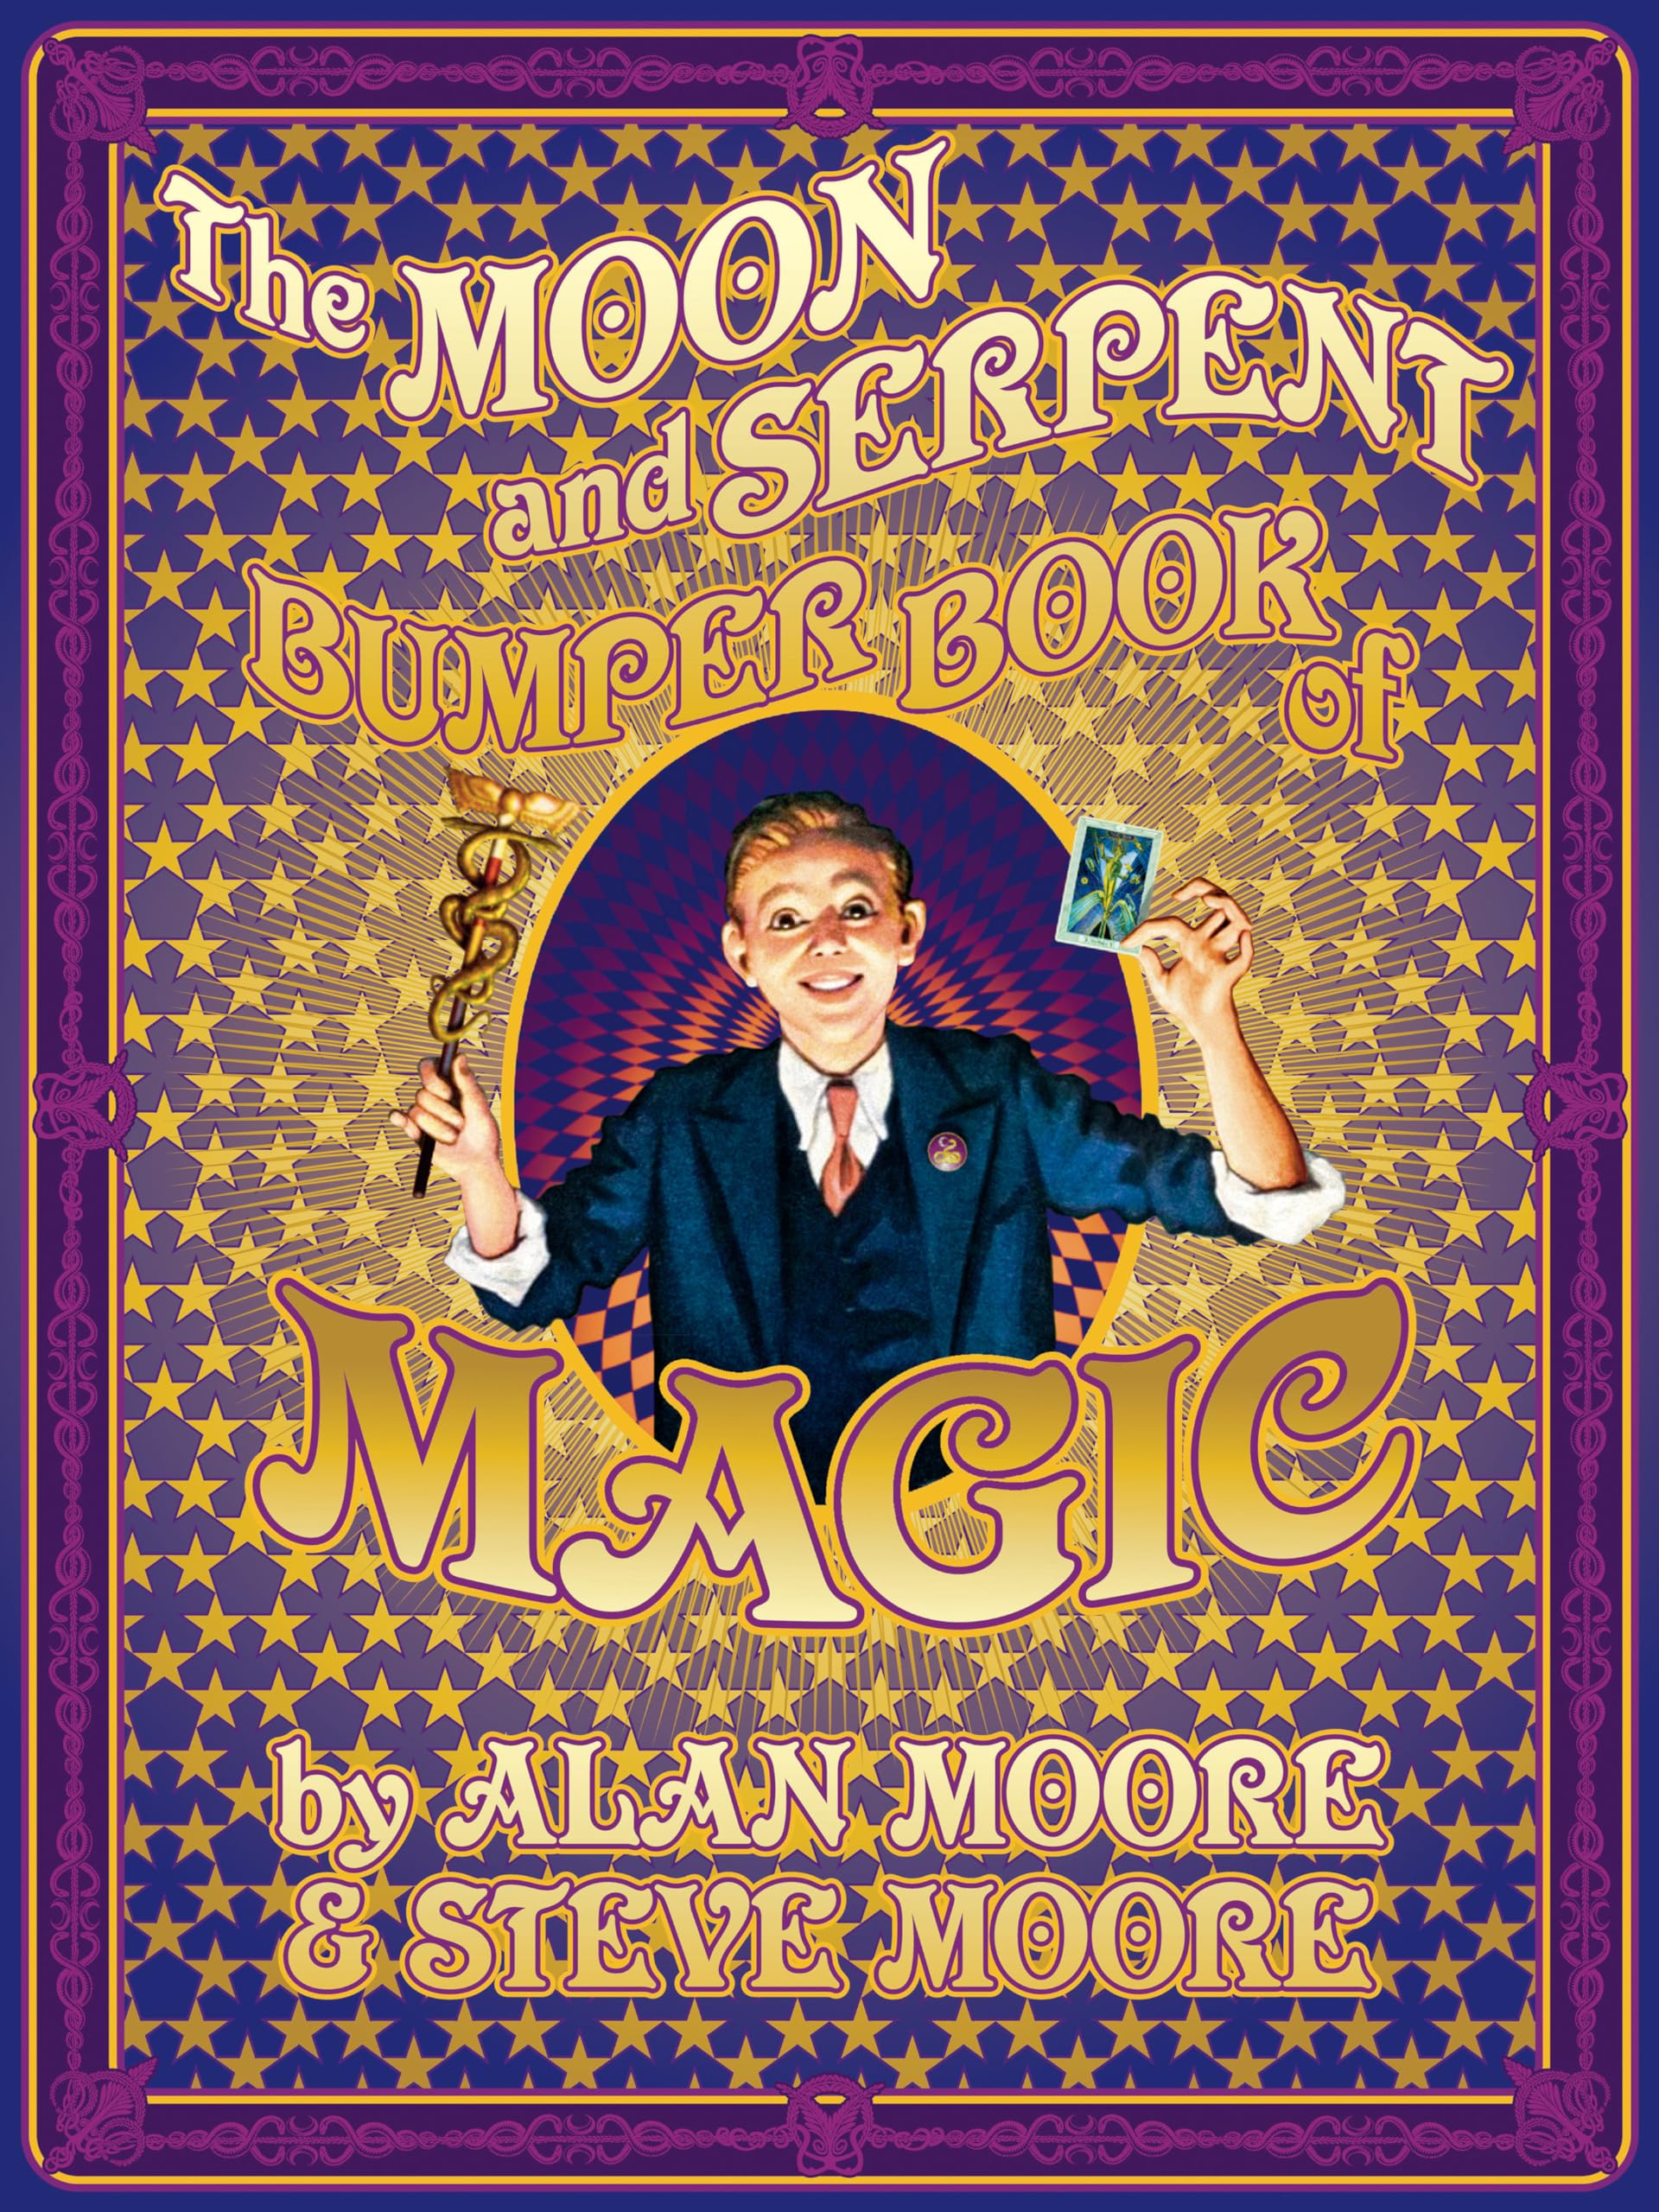 The Moon & Serpent Bumper Book of Magic